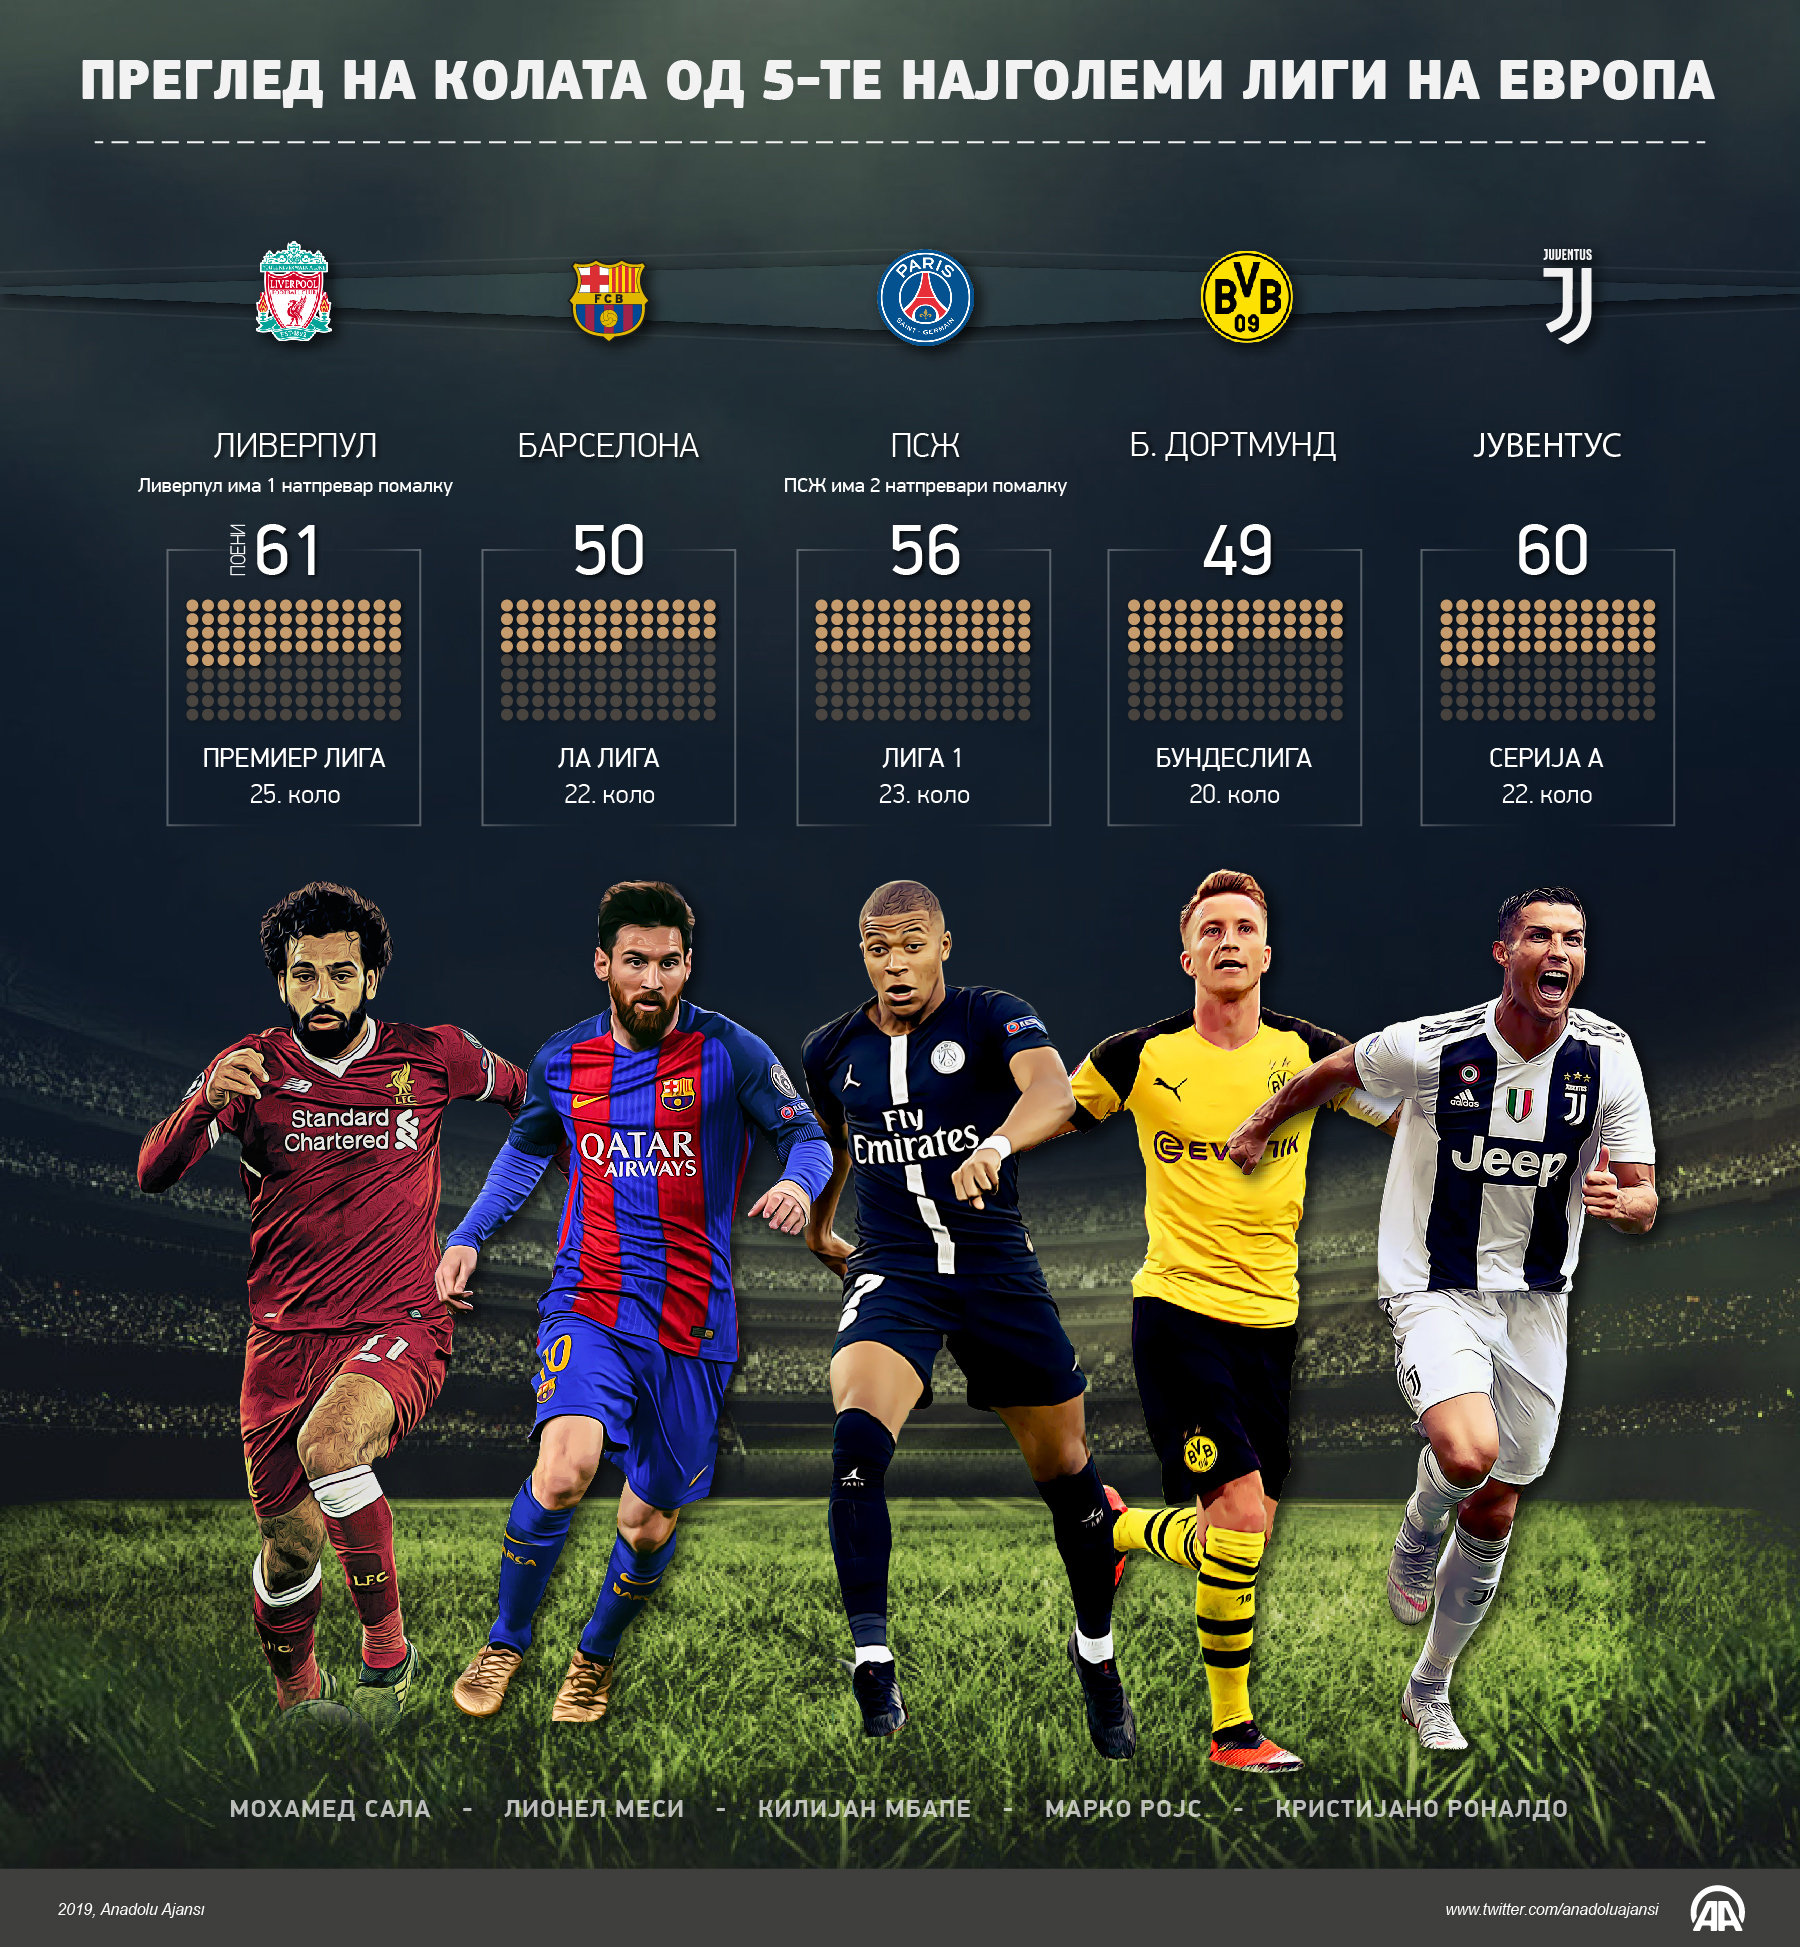 Преглед на колата од 5-те најголеми фудбалски лиги на Европа